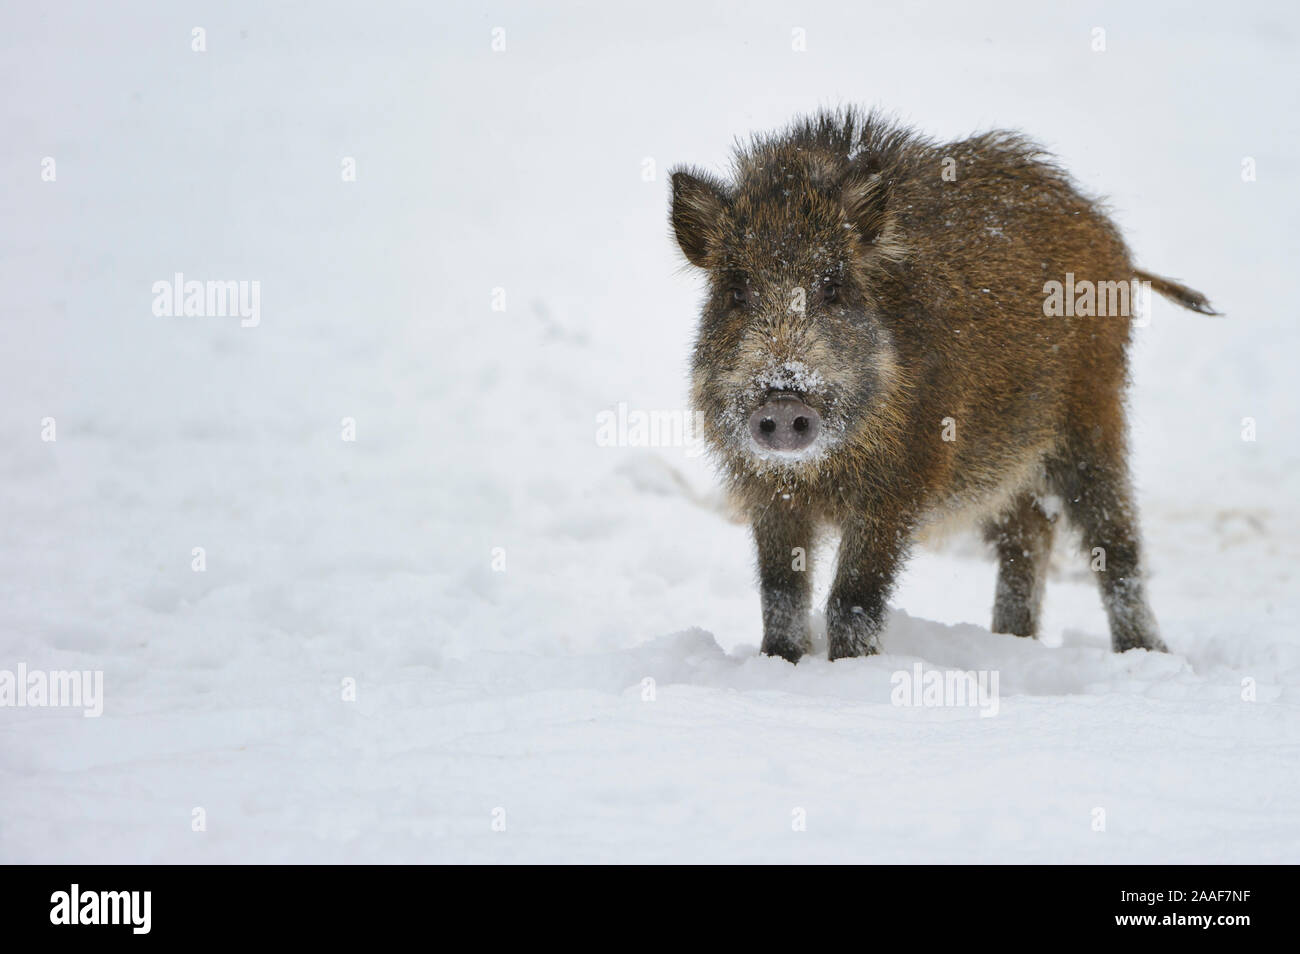 Wildschwein im Schnee, Winter Stock Photo